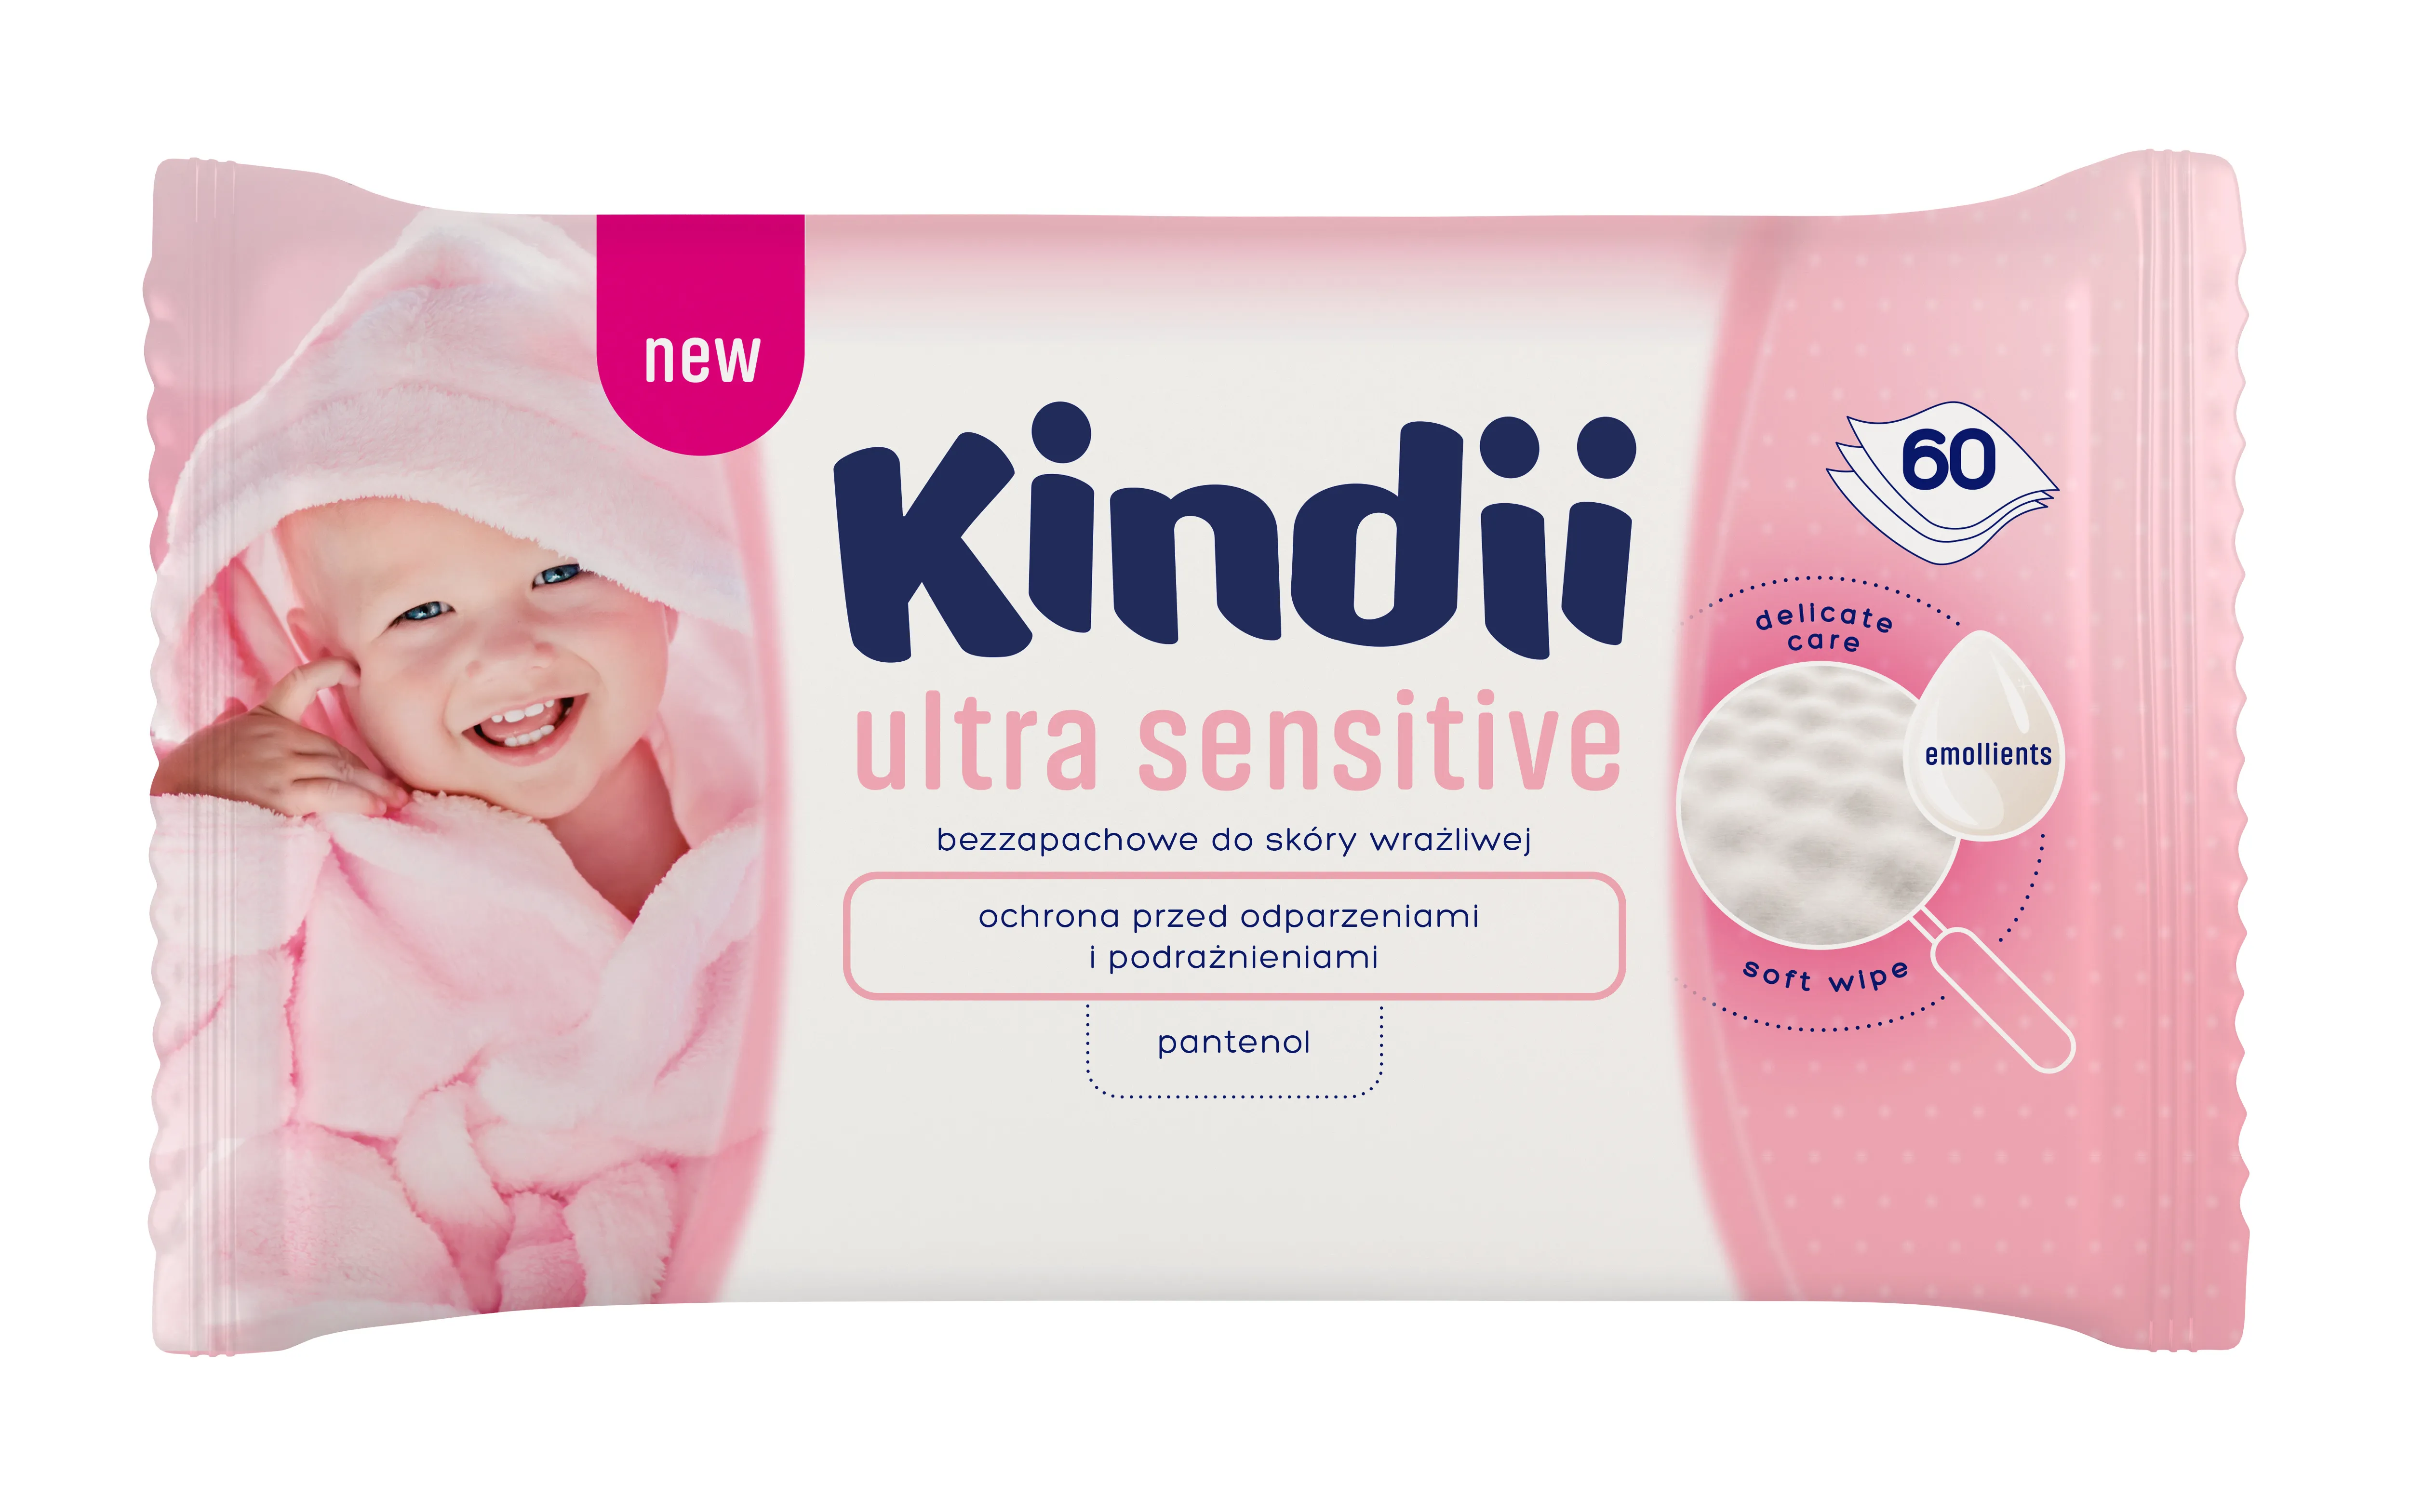 Kindii Ultra Sensitive, bezzapachowe chusteczki dla dzieci do skóry wrazliwej, 60 szt